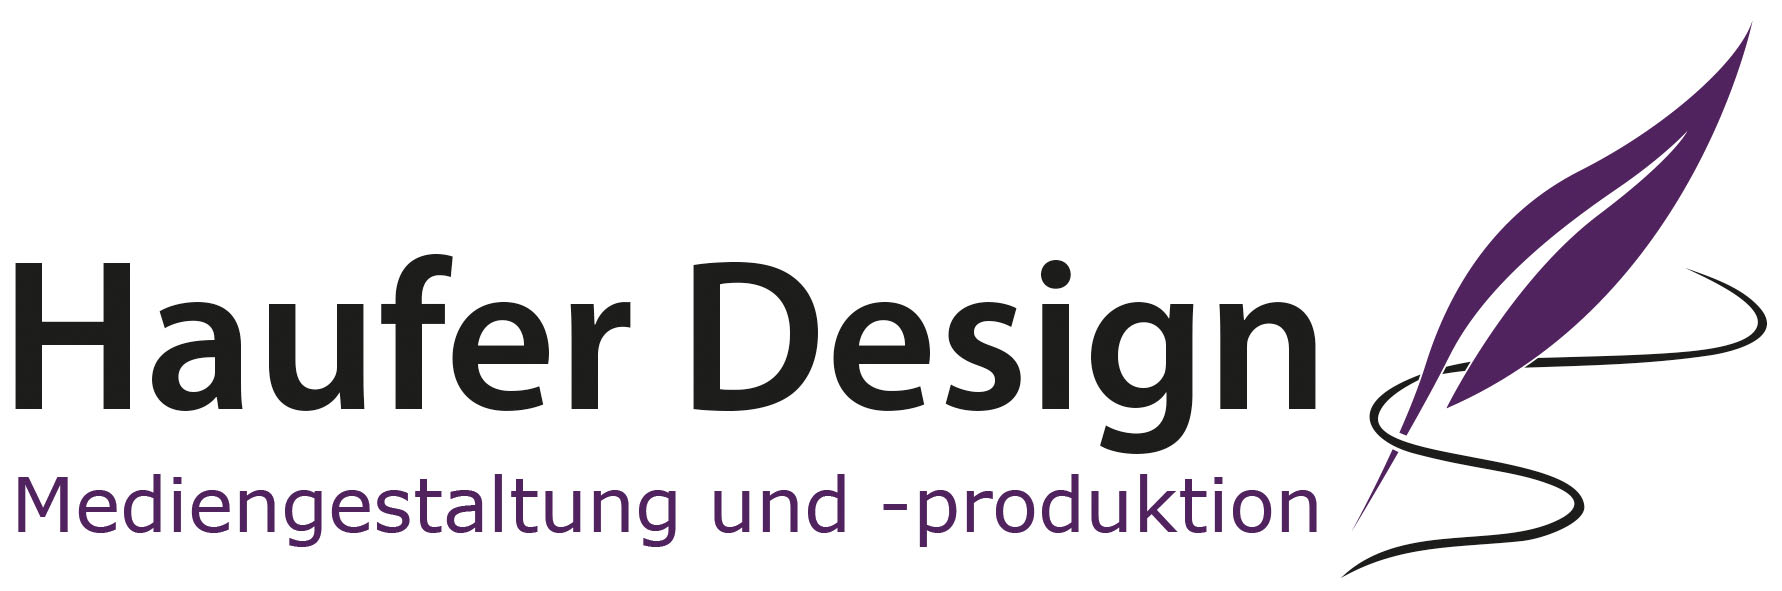 Haufer Design - Mediengestaltung und -produktion